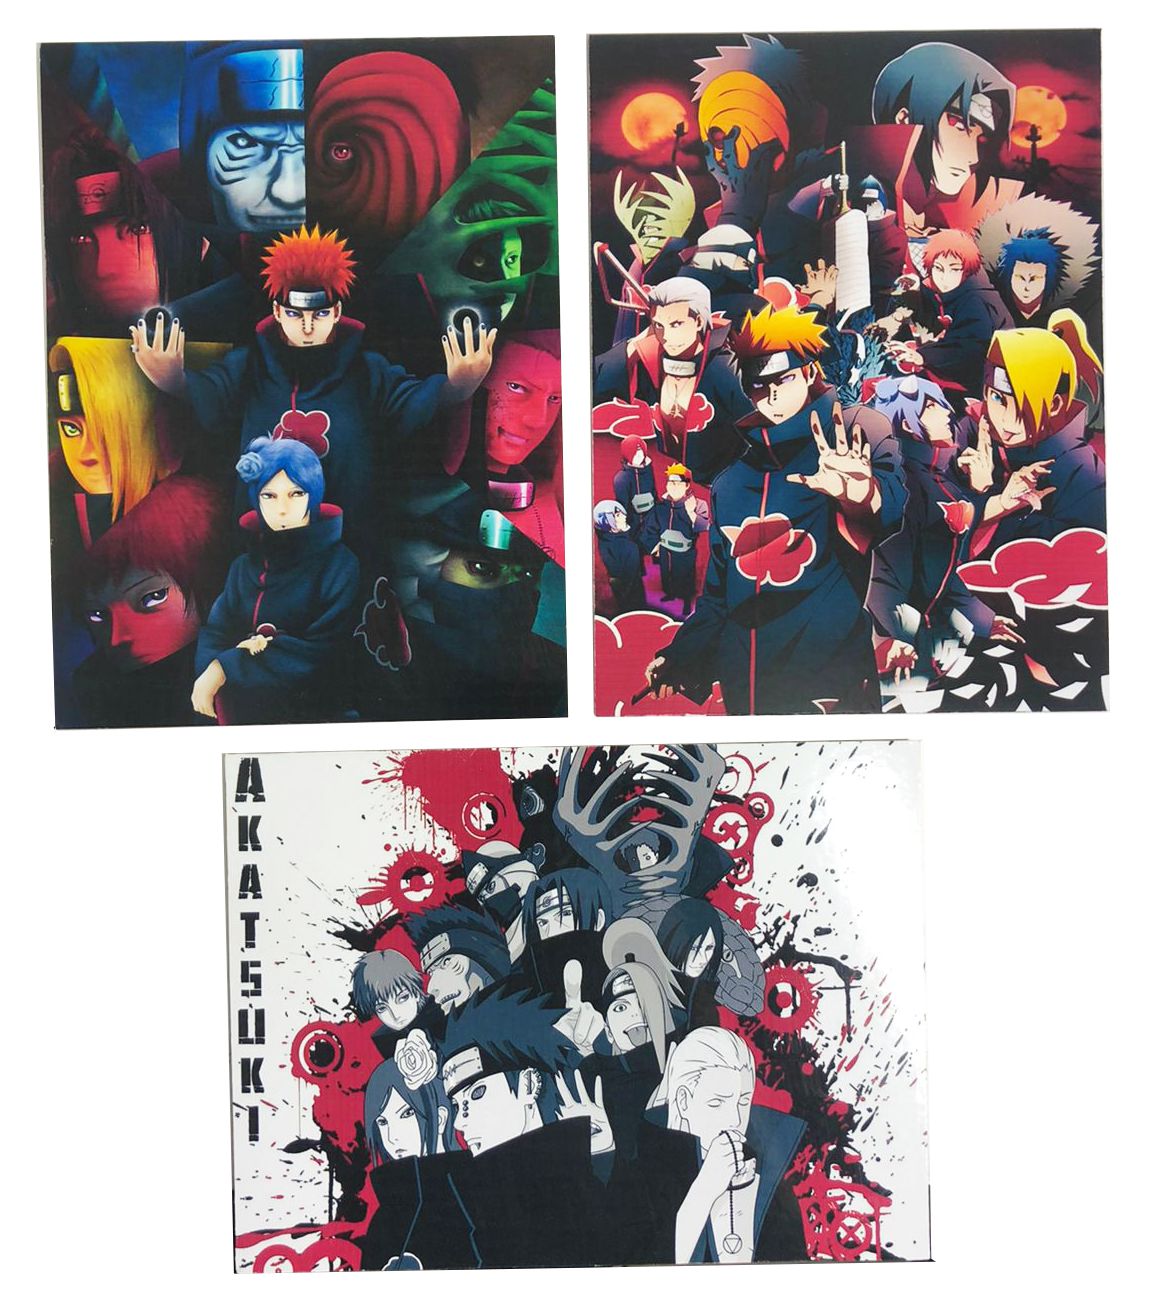 Placa Decorativa em MDF - Naruto, Akatsuki